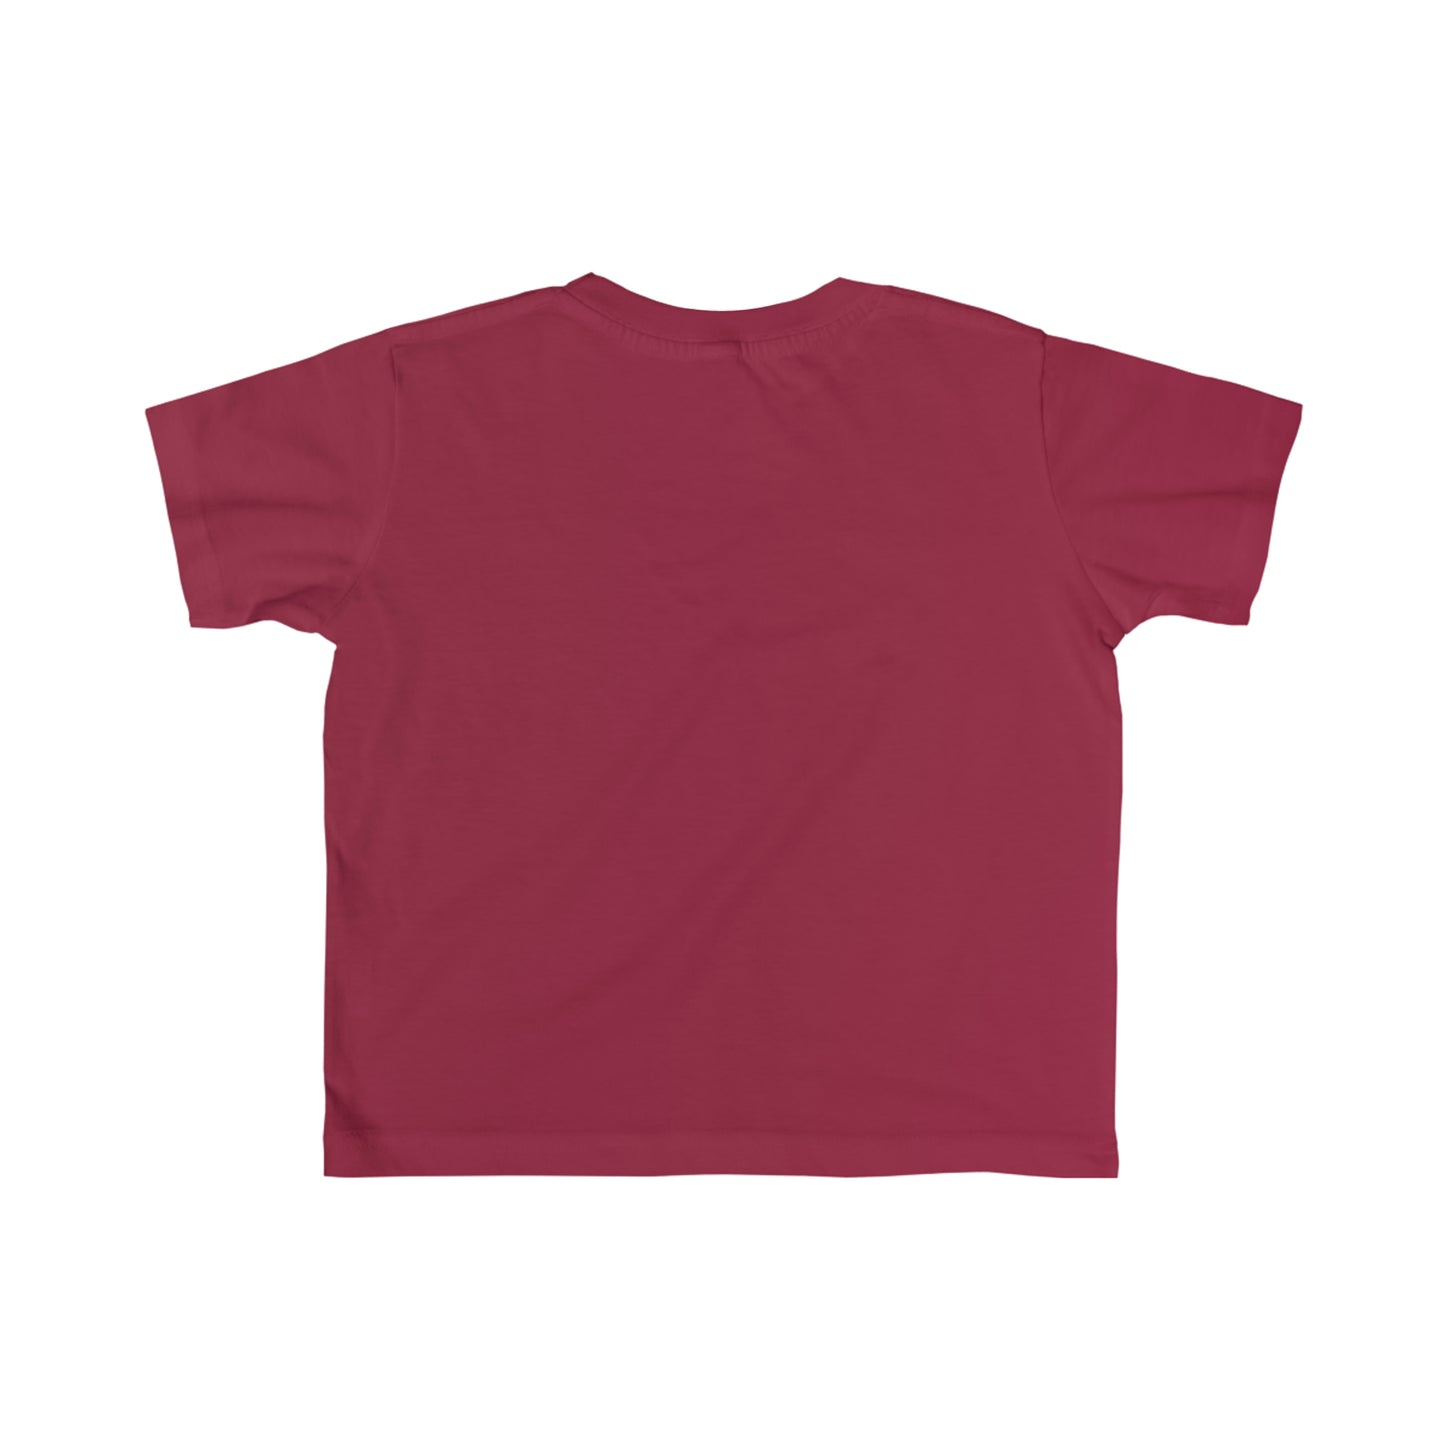 Toddler's Fine Jersey Tee, Kids Bible Verse Shirt, Toddler's Short Sleeve T-Shirt